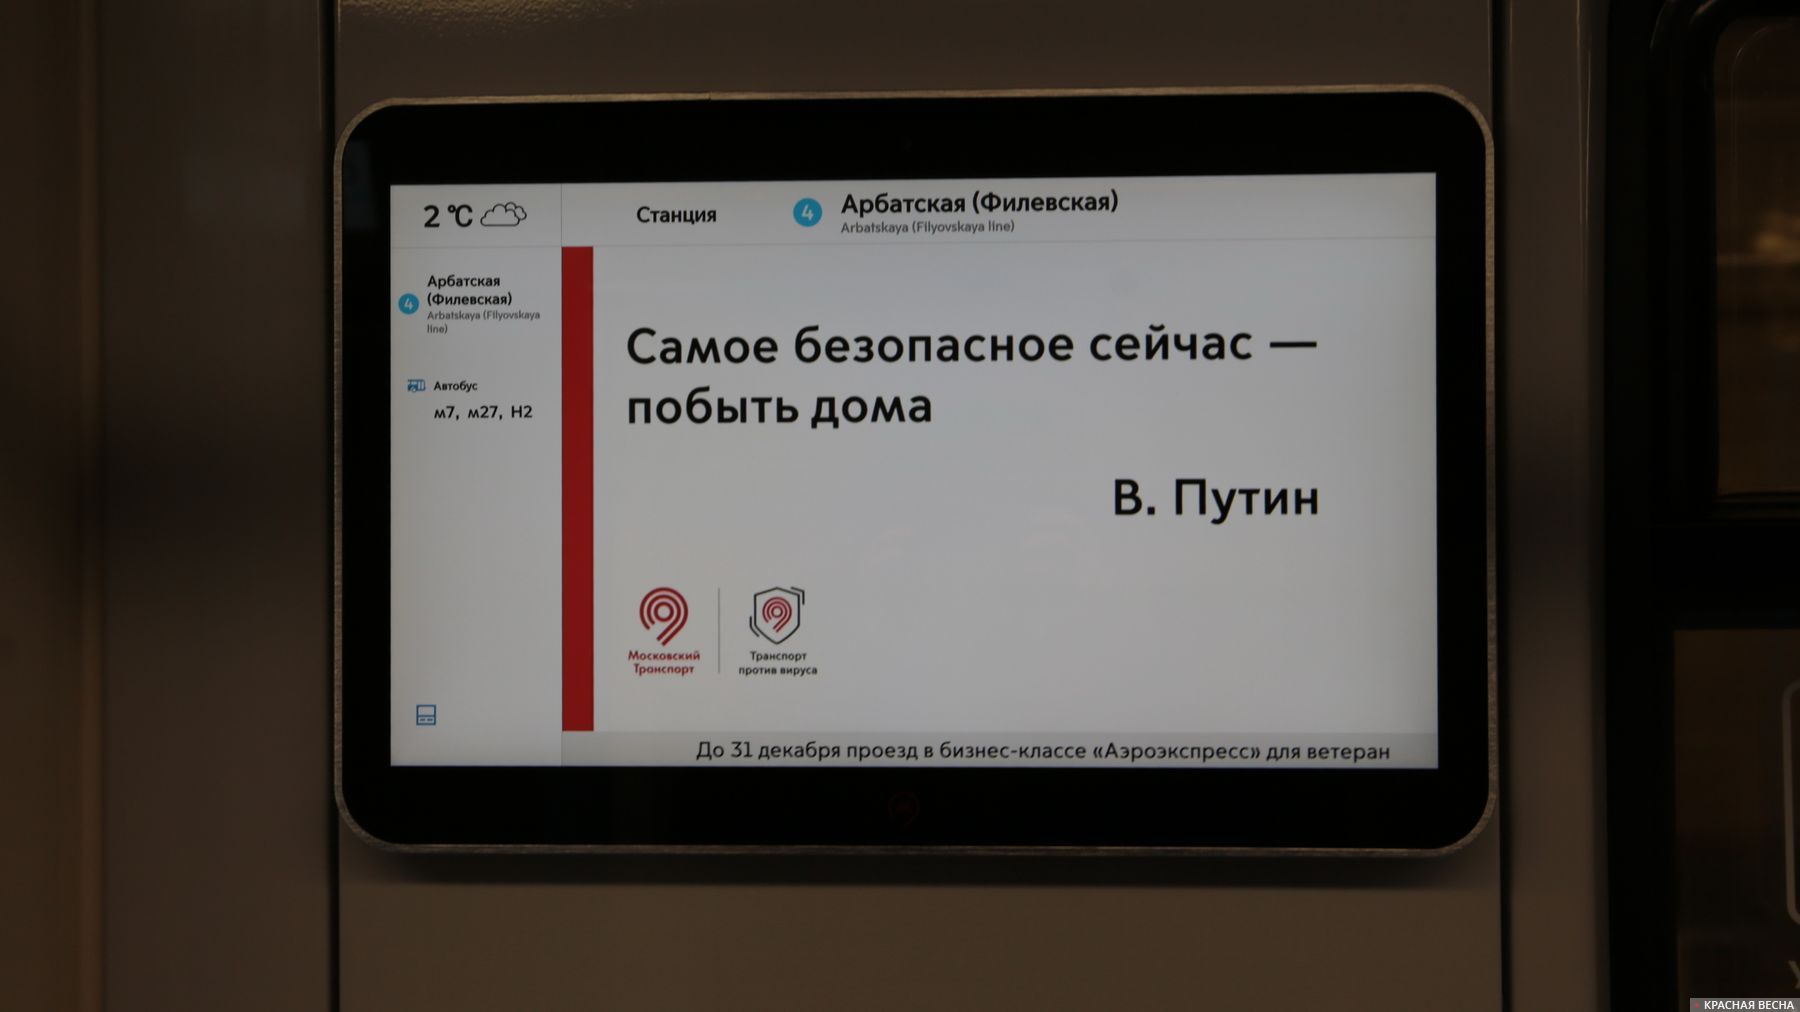 Москва. Напоминание в вагоне метро. 1 апреля 2020 года